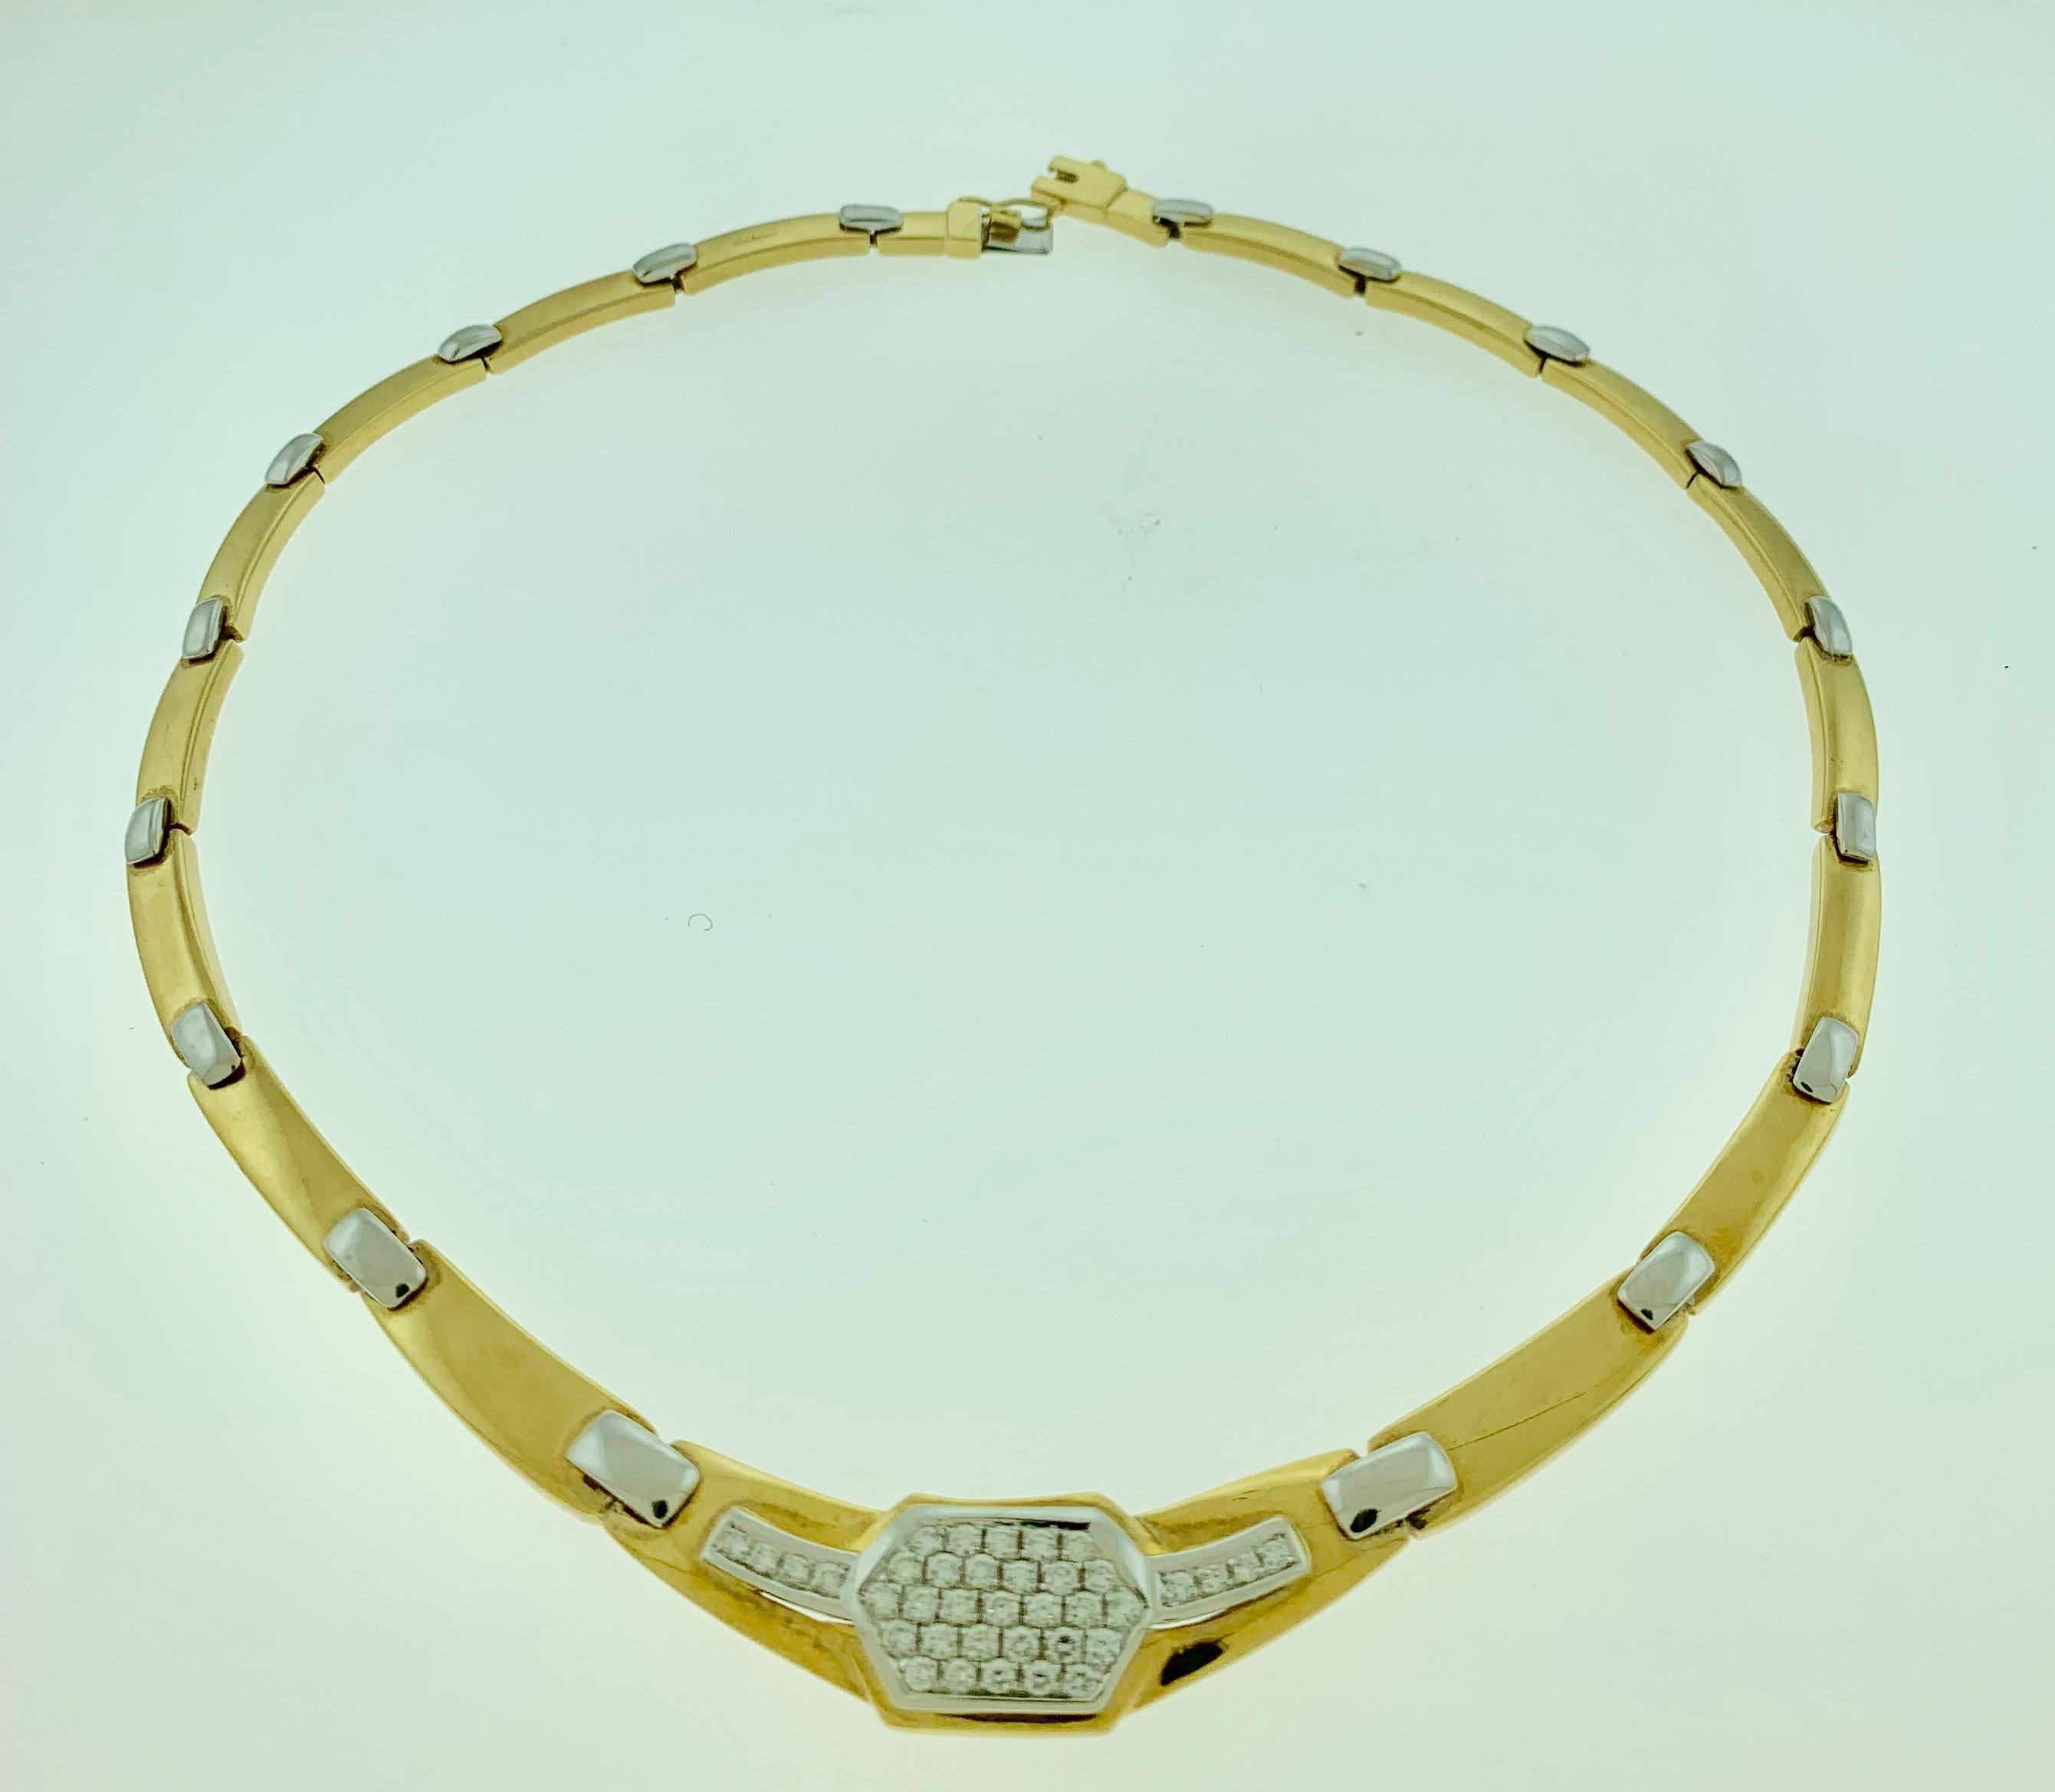 2.5 carat diamond necklace